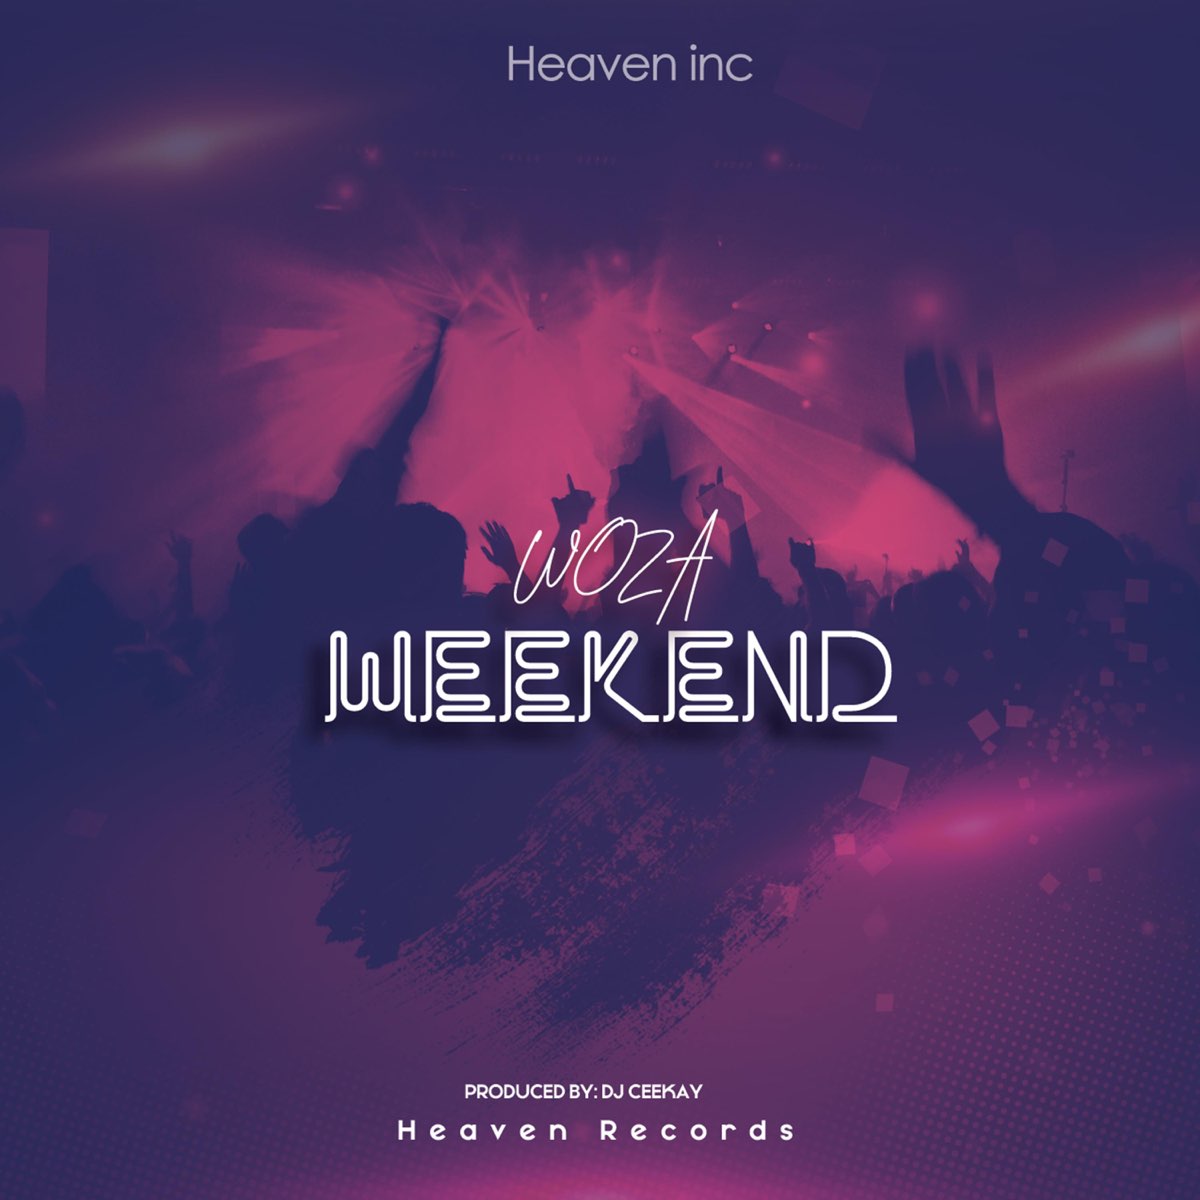 ‎woza Weekend Single By Heaven Inc On Apple Music